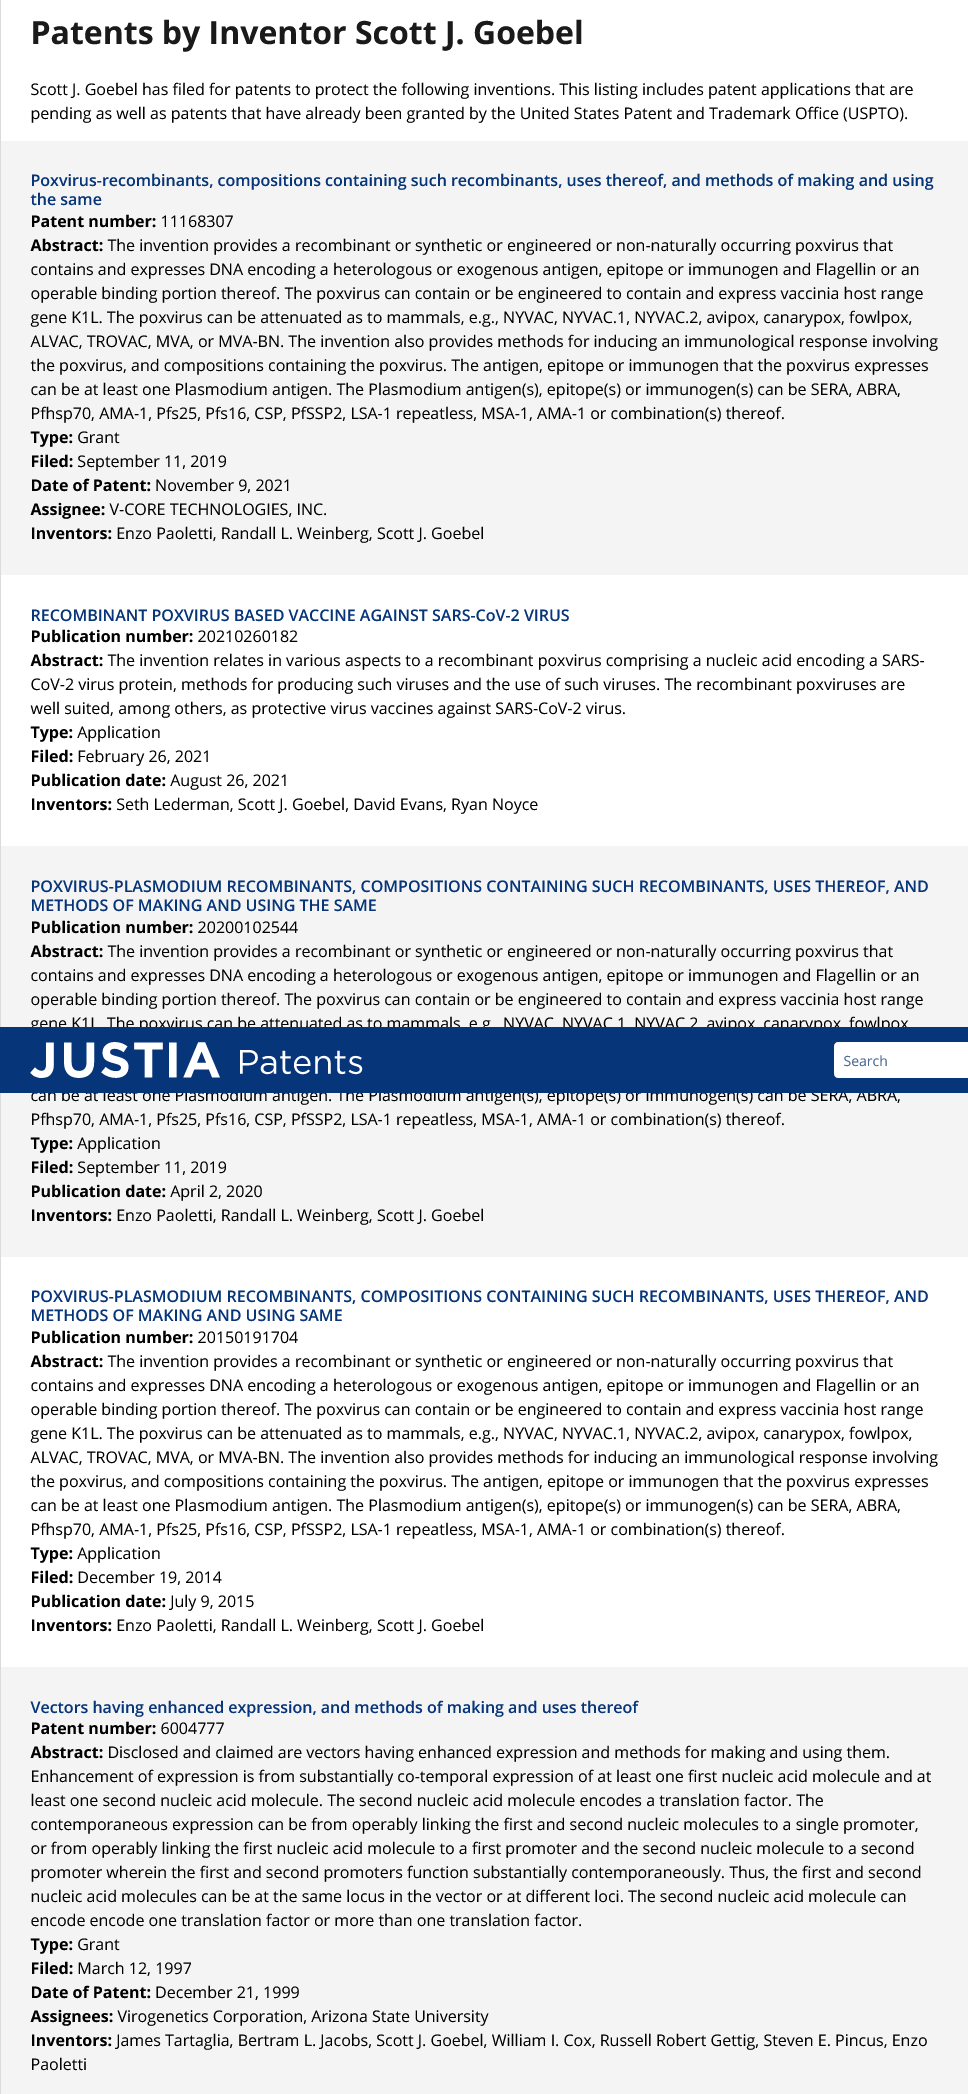 Zrzut ekranu 2022-05-23 o 14-05-00 Scott J. Goebel Wynalazki Patenty i zgłoszenia patentowe - Justia Patents Search.png